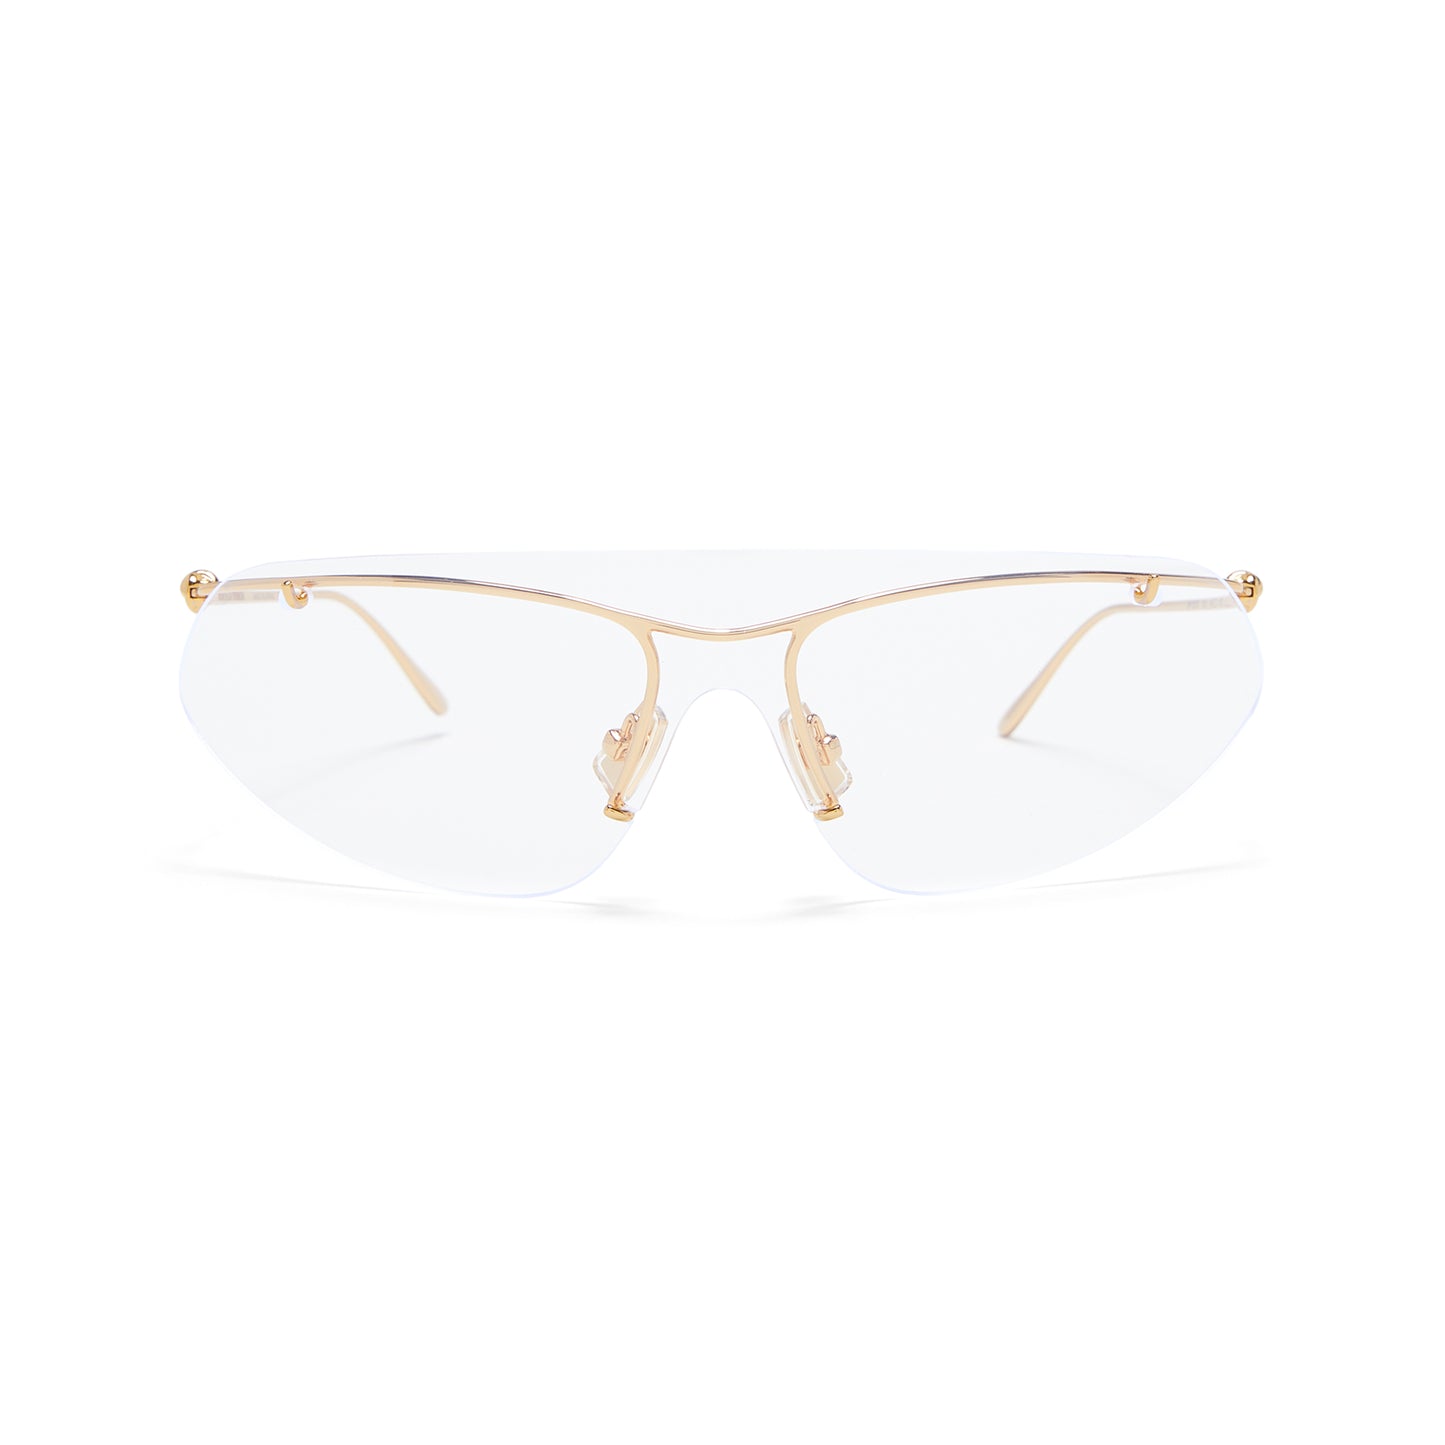 Bottega Veneta  Knot Shield metal sunglasses (Gold/Transparent)